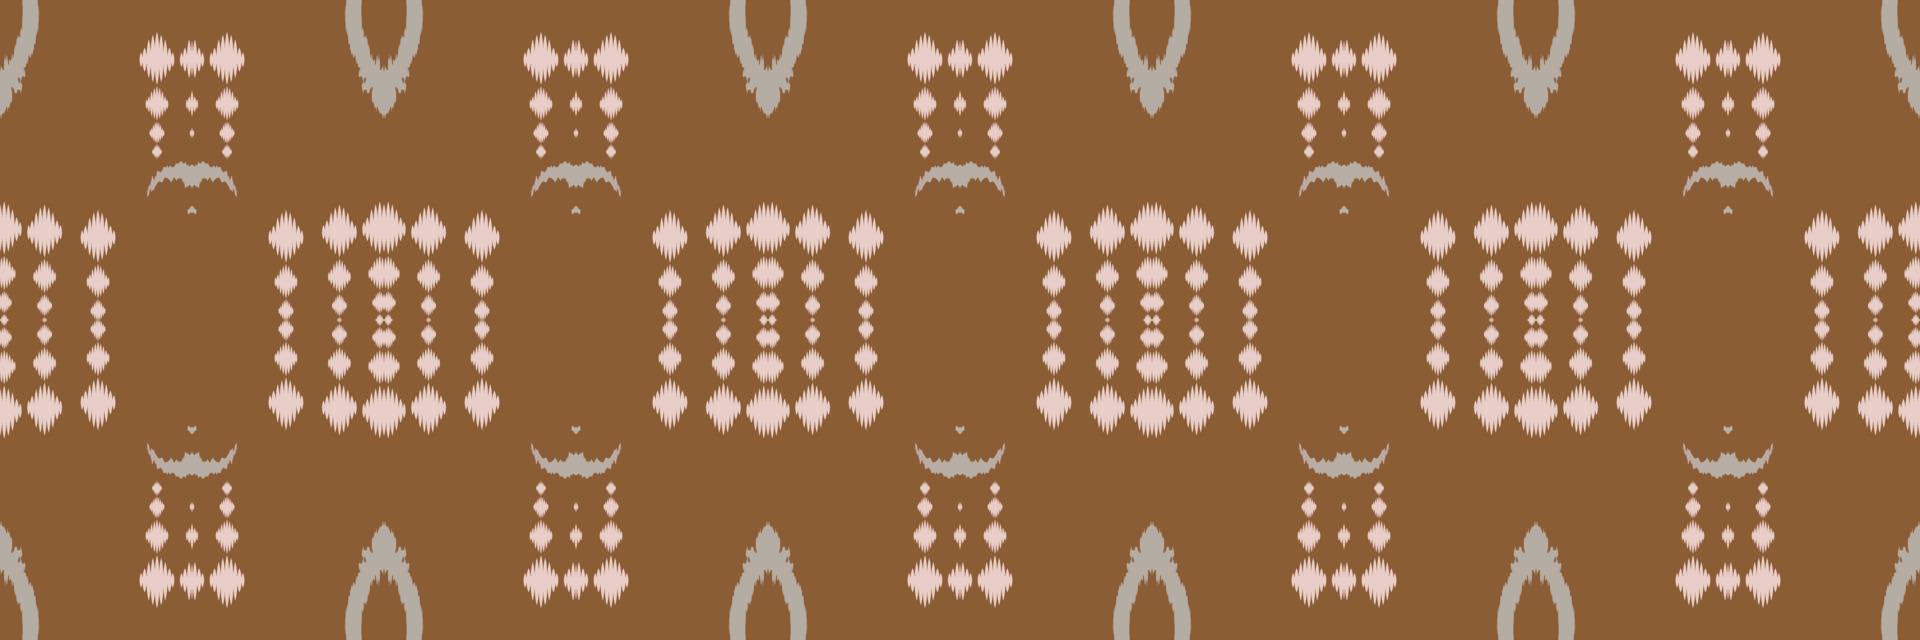 tela ikat cruz tribal geométrica diseño oriental étnico tradicional para el fondo. bordado popular, indio, escandinavo, gitano, mexicano, alfombra africana, papel tapiz. vector